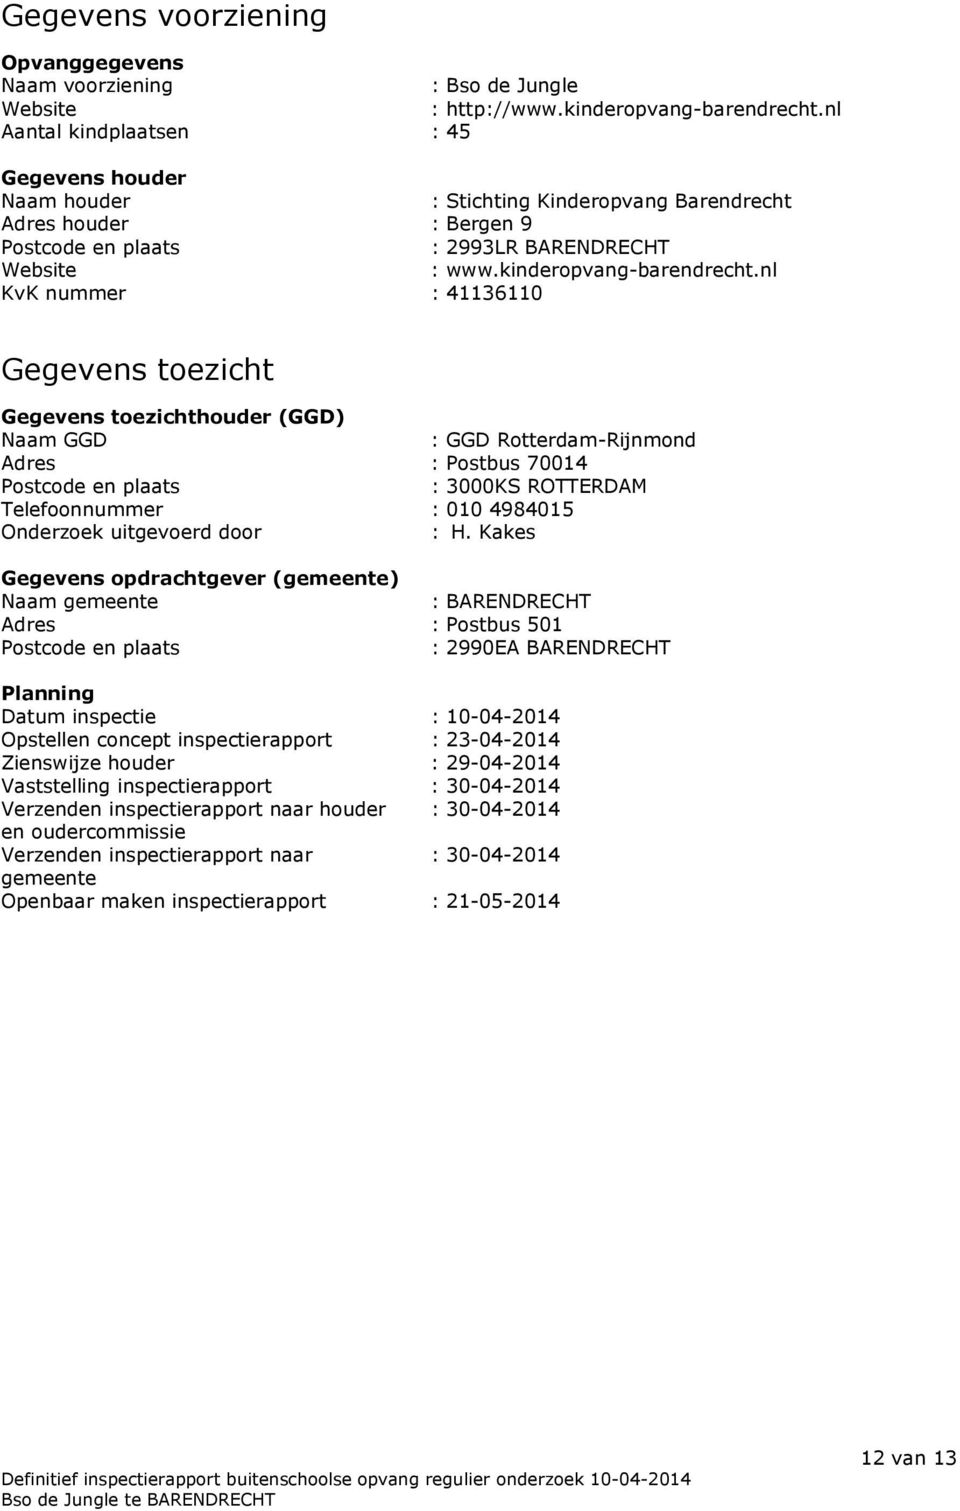 nl KvK nummer : 41136110 Gegevens toezicht Gegevens toezichthouder (GGD) Naam GGD : GGD Rotterdam-Rijnmond Adres : Postbus 70014 Postcode en plaats : 3000KS ROTTERDAM Telefoonnummer : 010 4984015